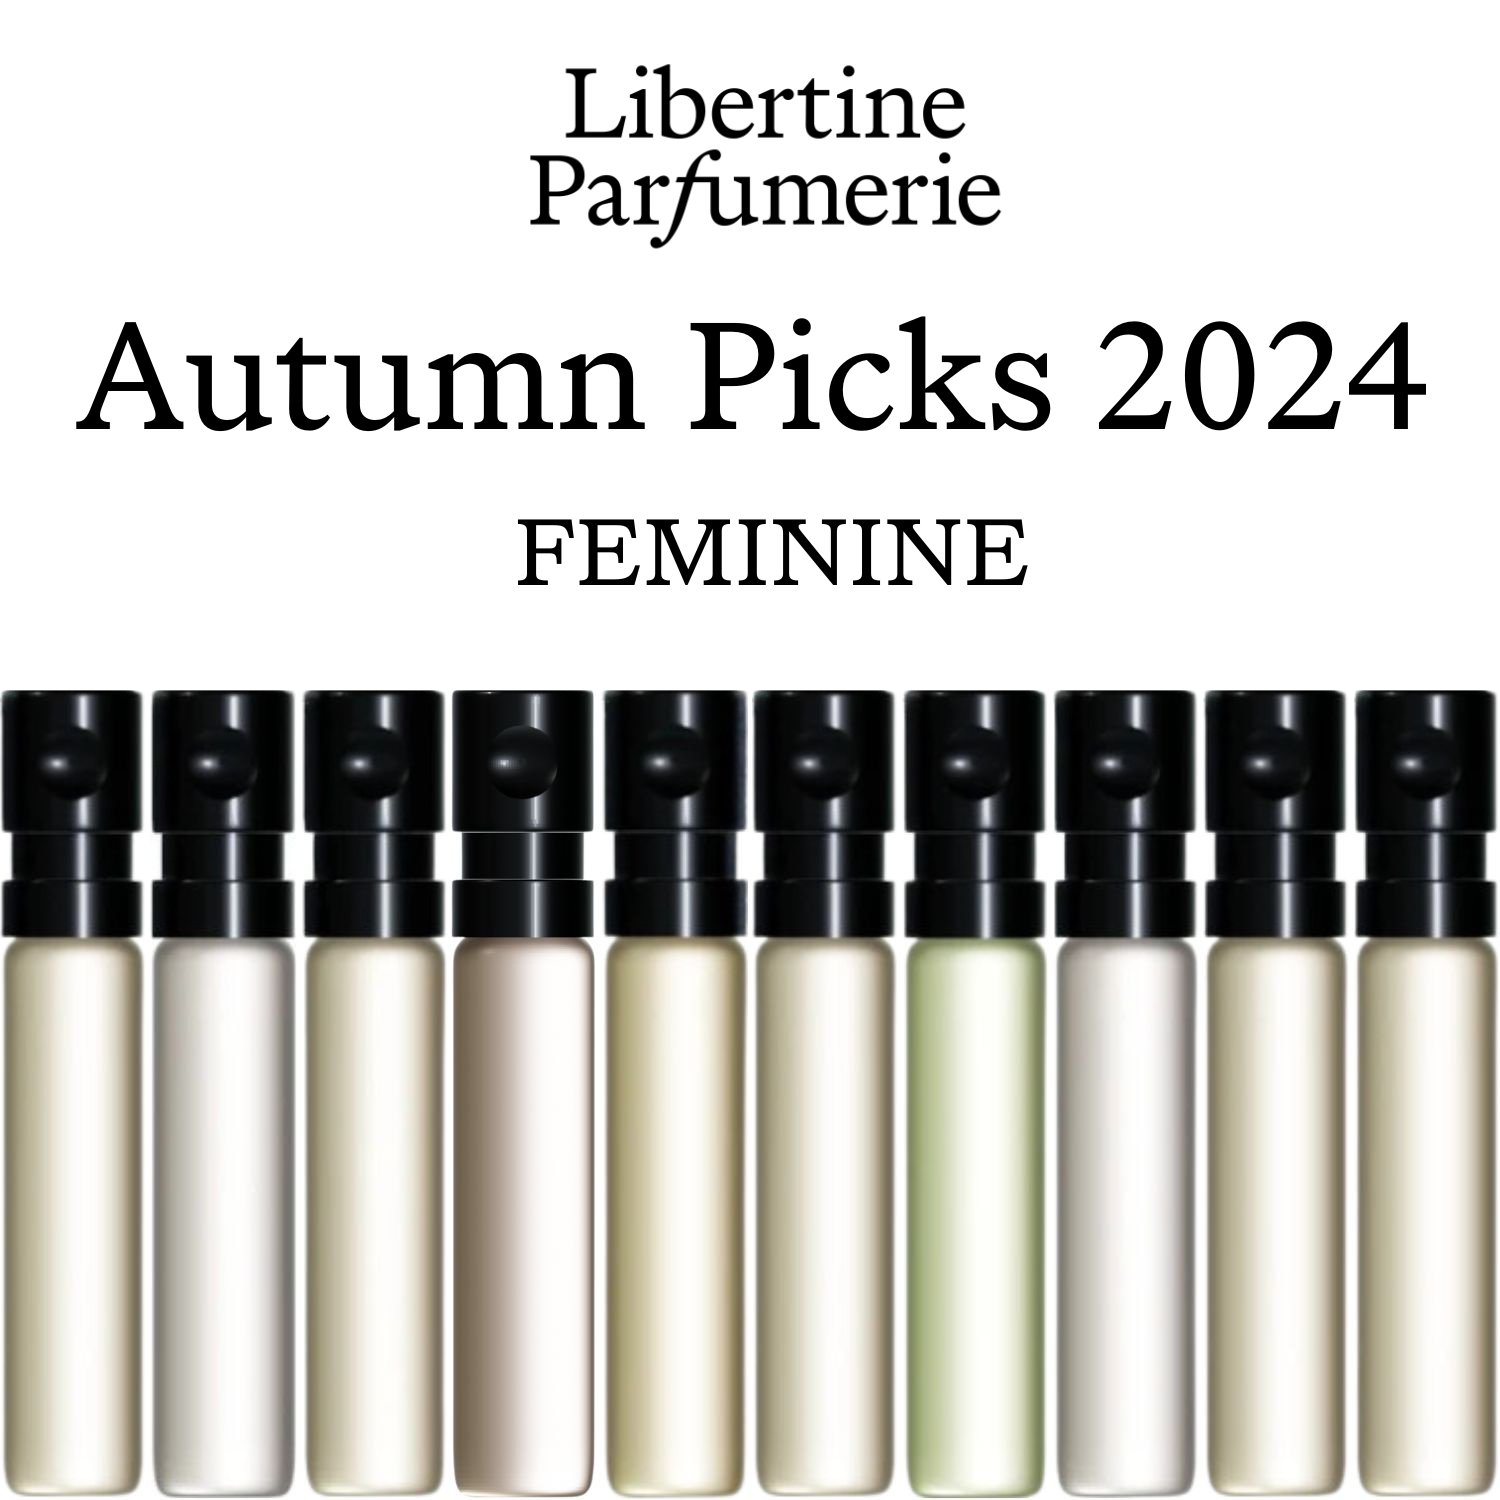 Top 10 Autumn Picks 2024 - Feminine